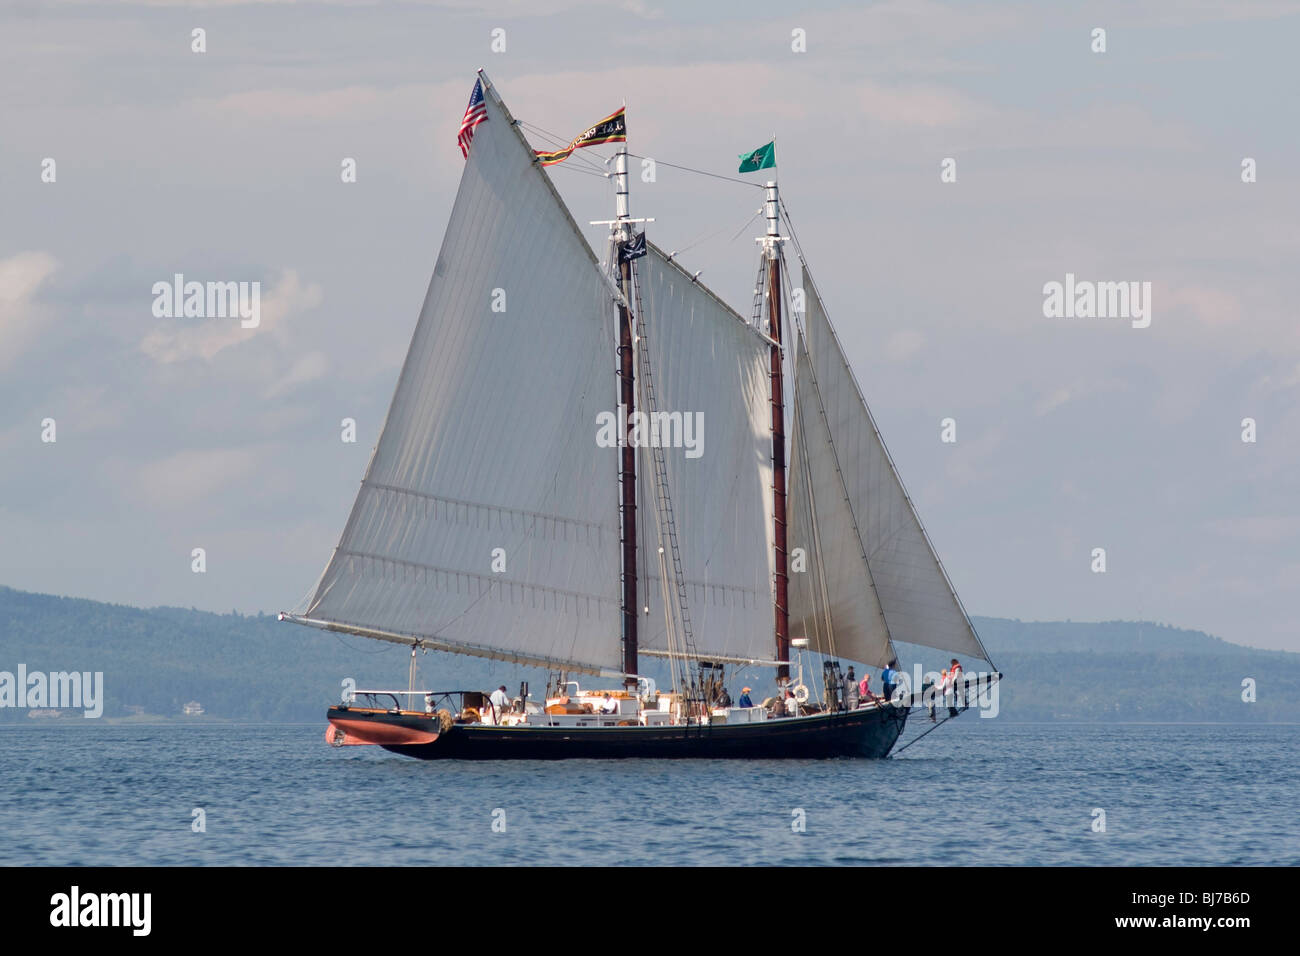 The Windjammer J&E RIGGIN under full sail in Penobscot Bay Stock Photo ...